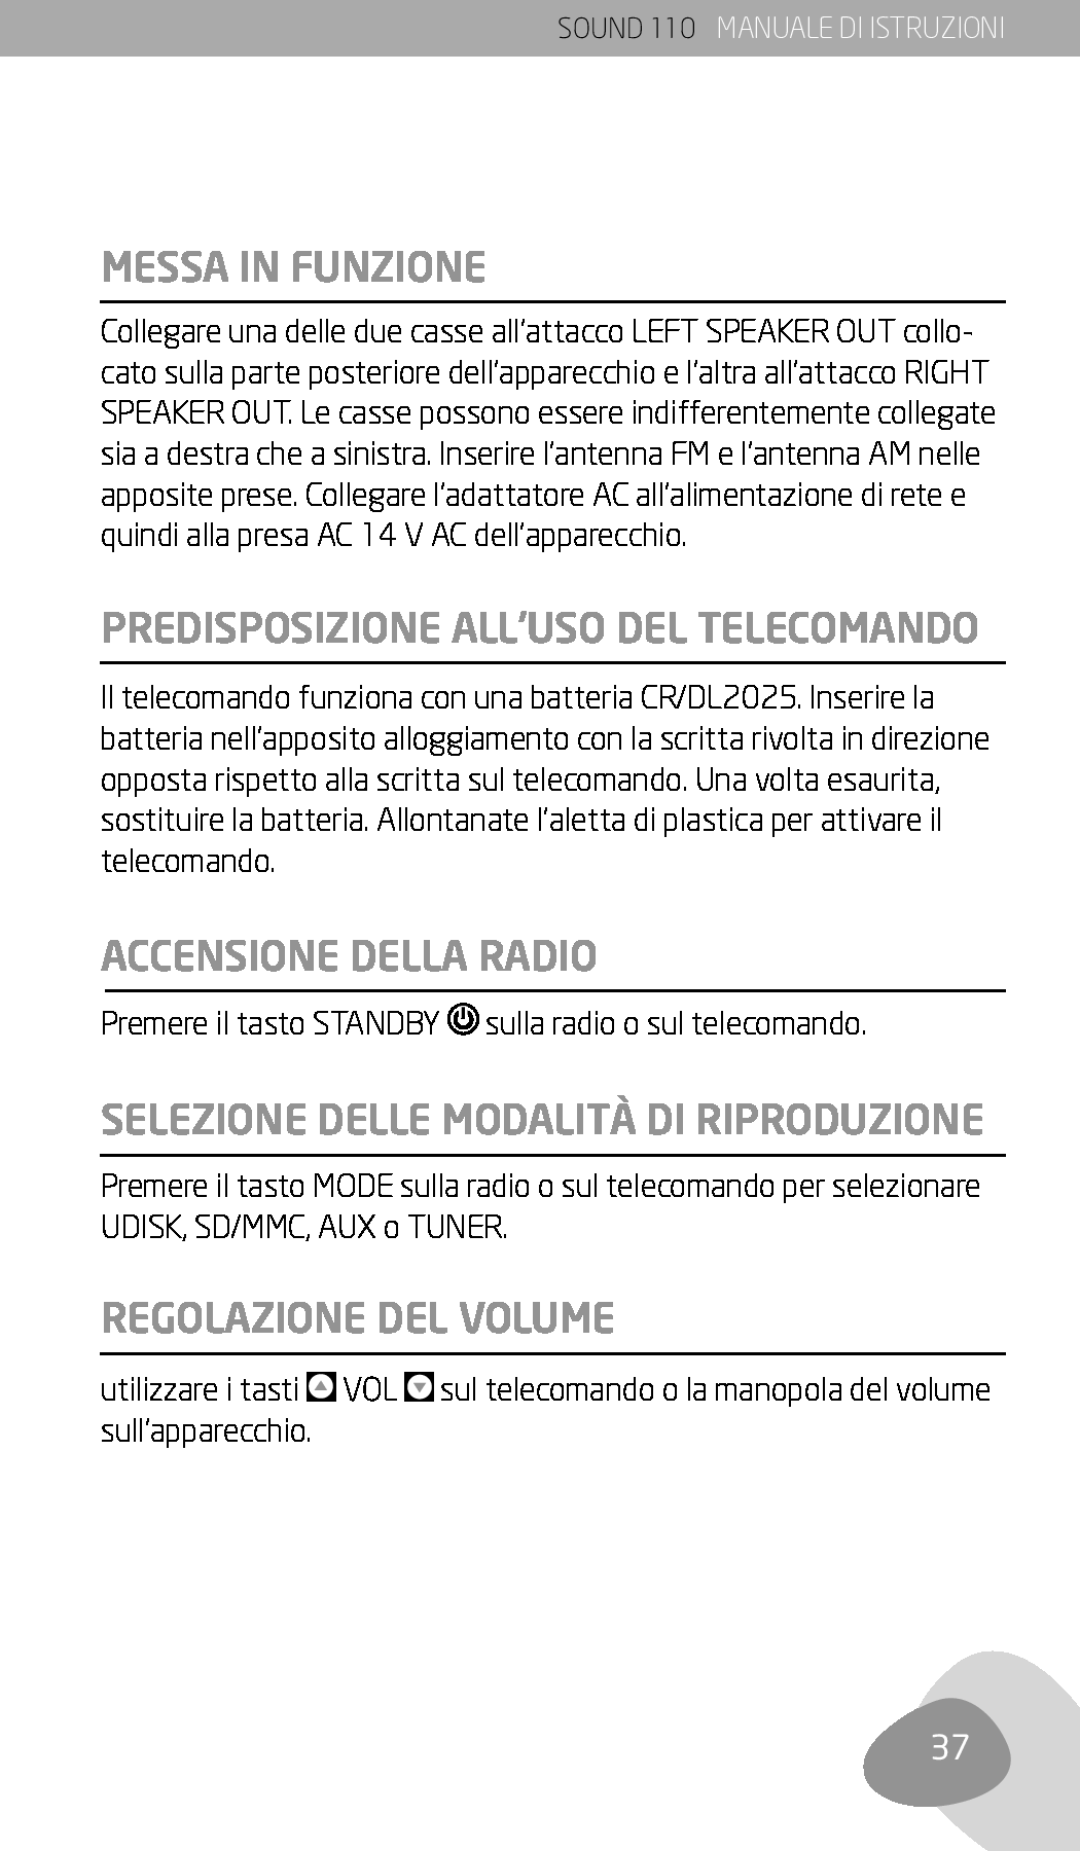 Eton 110 Messa In Funzione, Accensione Della Radio, Selezione Delle Modalità Di Riproduzione, Regolazione Del Volume 